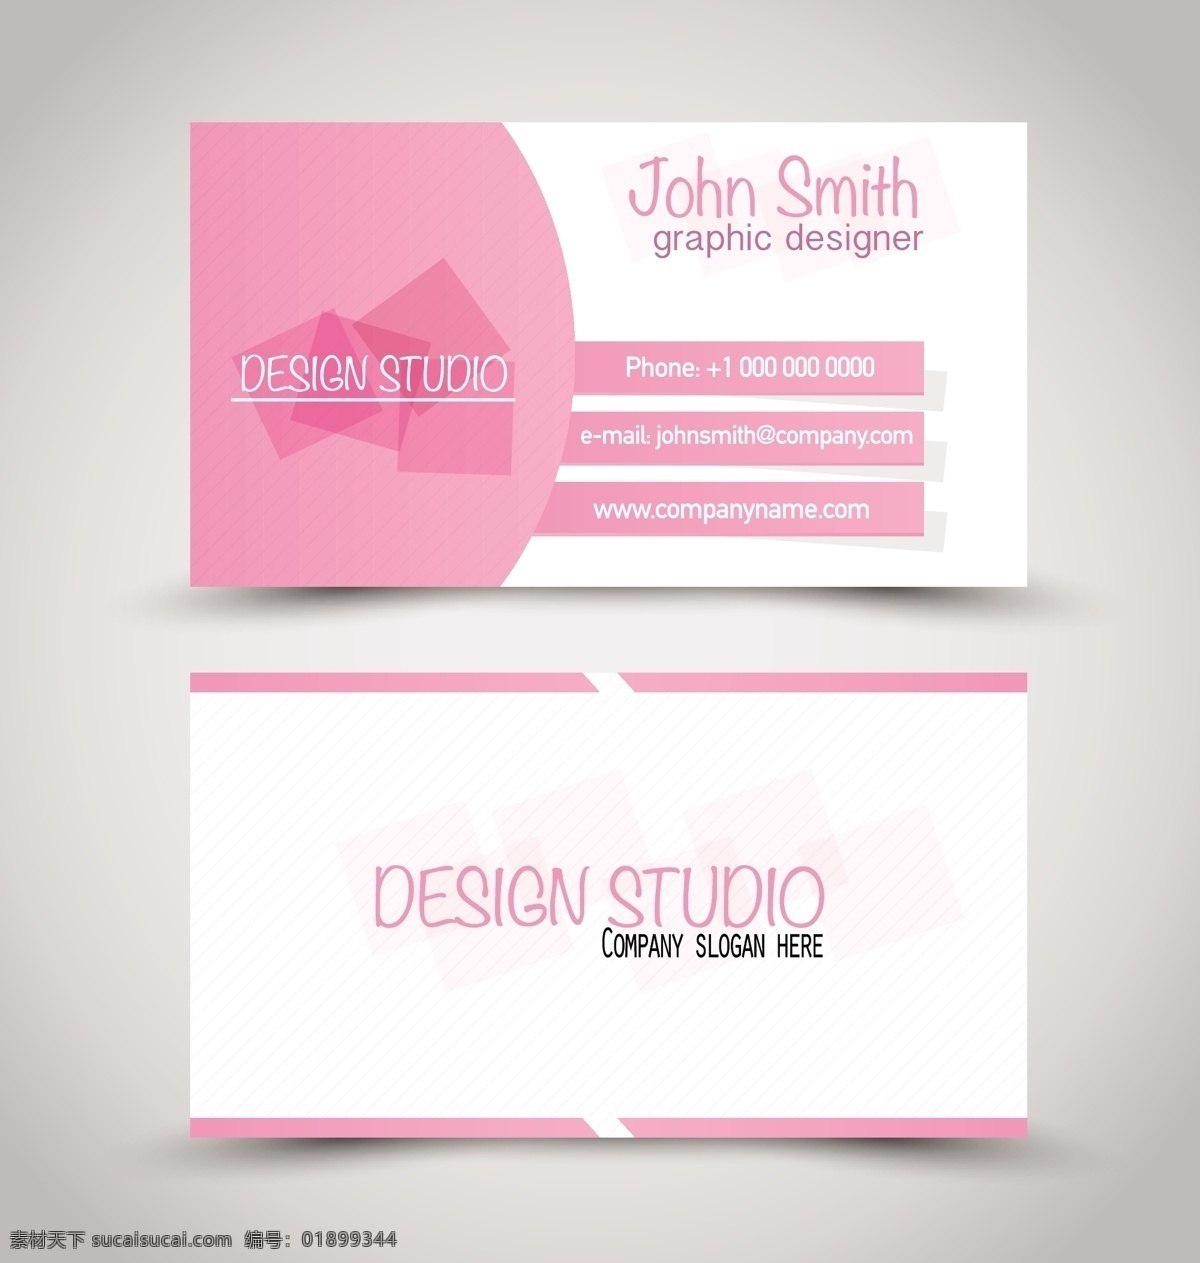 粉色 可爱 名片 矢量 模板 商务 卡片 矢量素材 设计素材